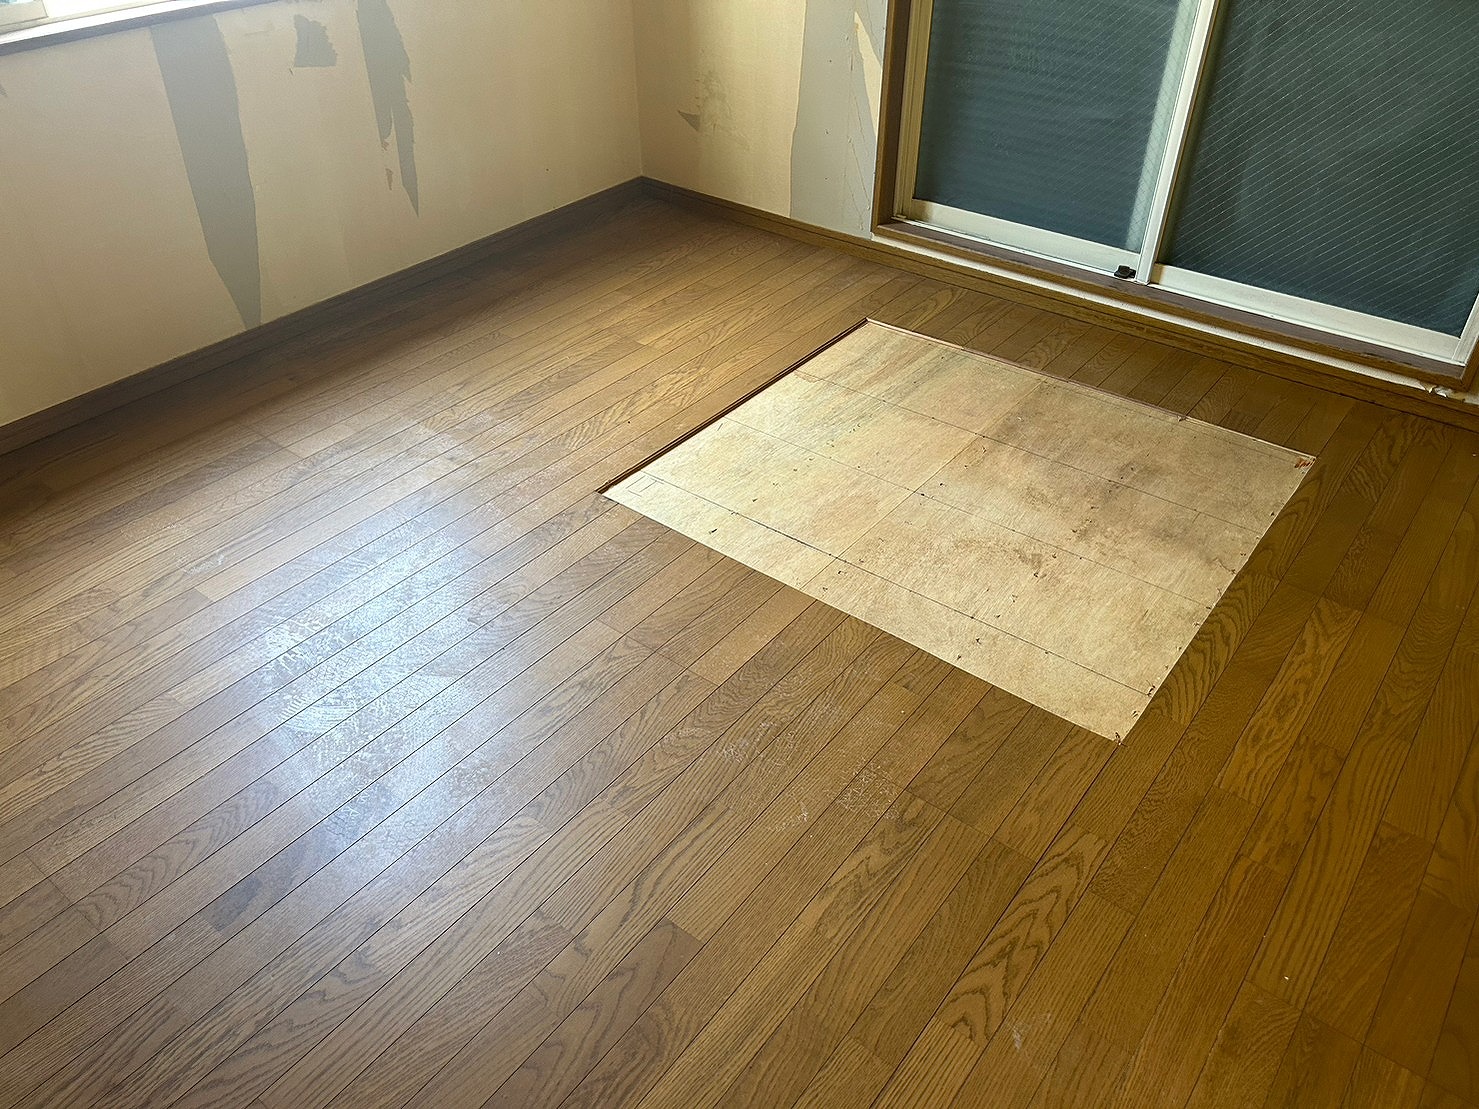 兵庫県神戸市東灘区にて　戸建て住宅（孤独死現場）での特殊清掃作業を実施してまいりました